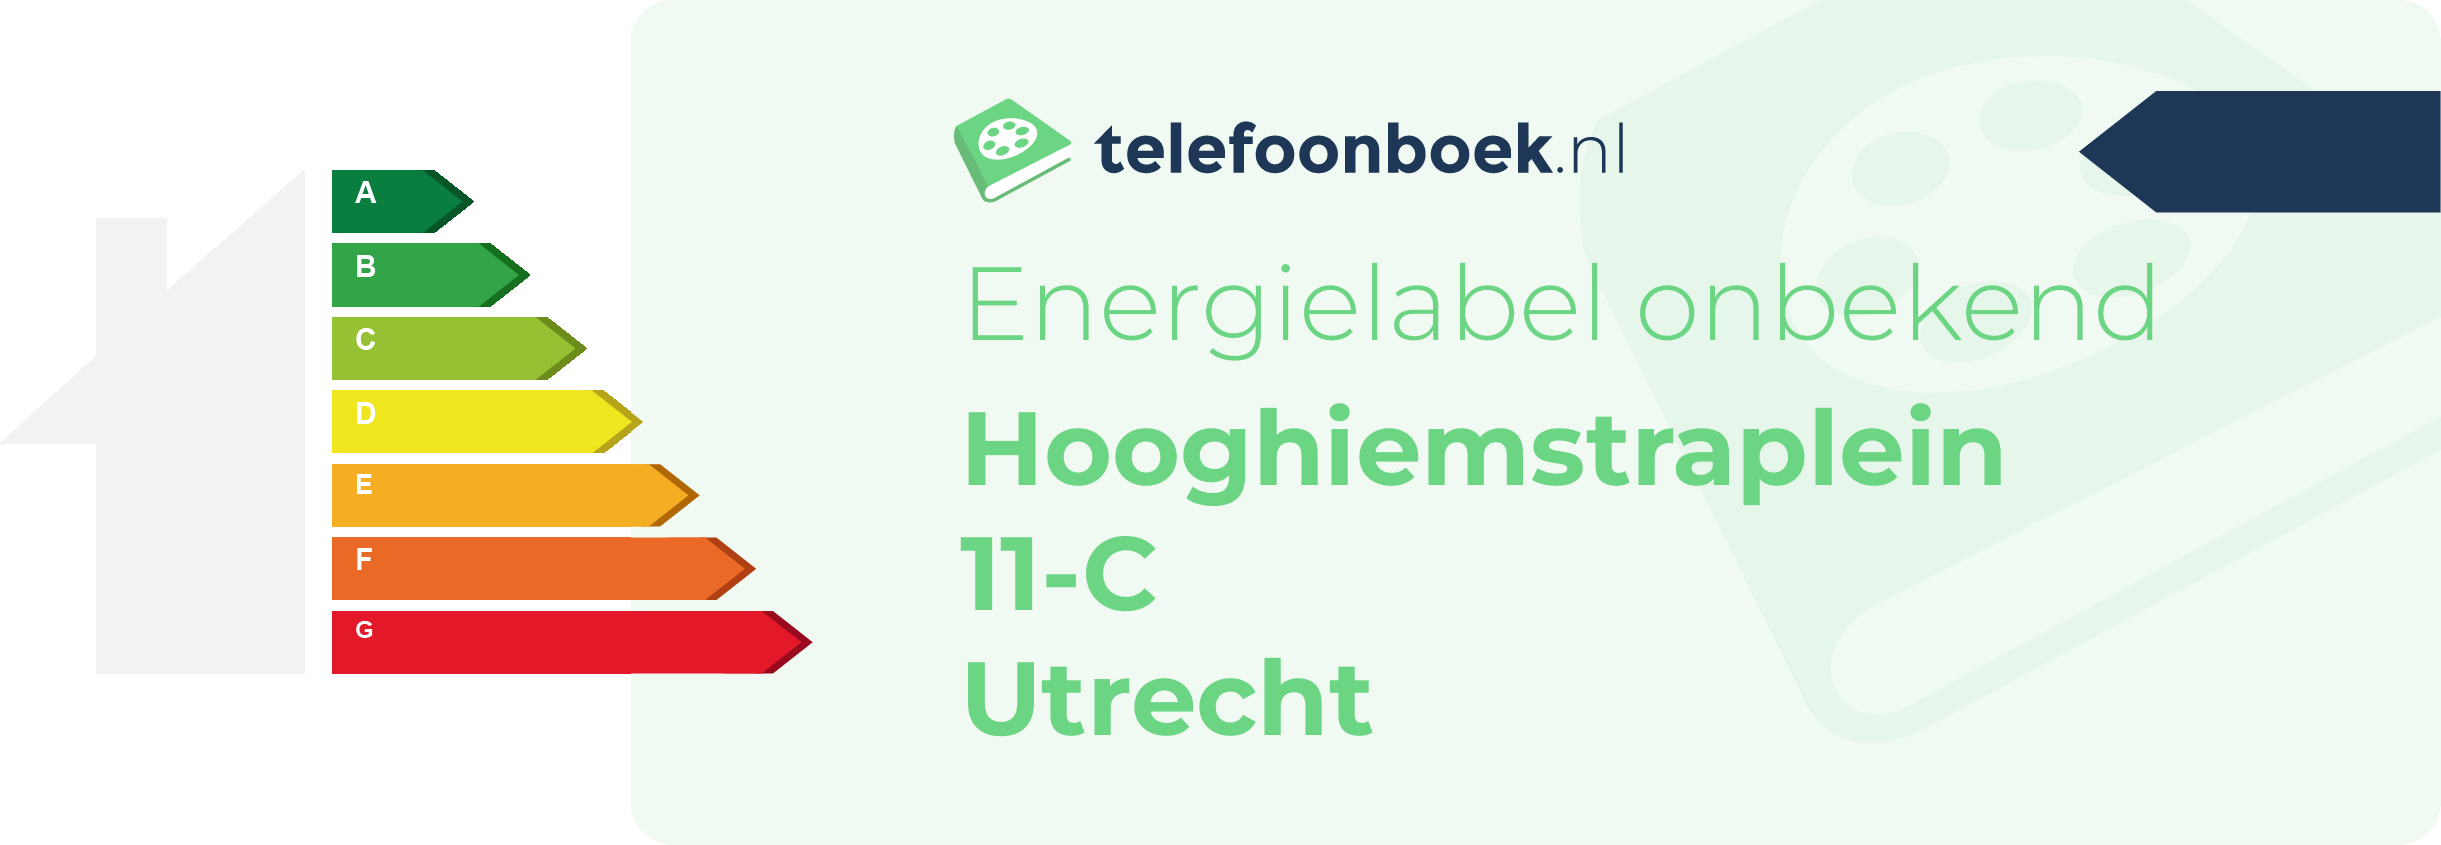 Energielabel Hooghiemstraplein 11-C Utrecht